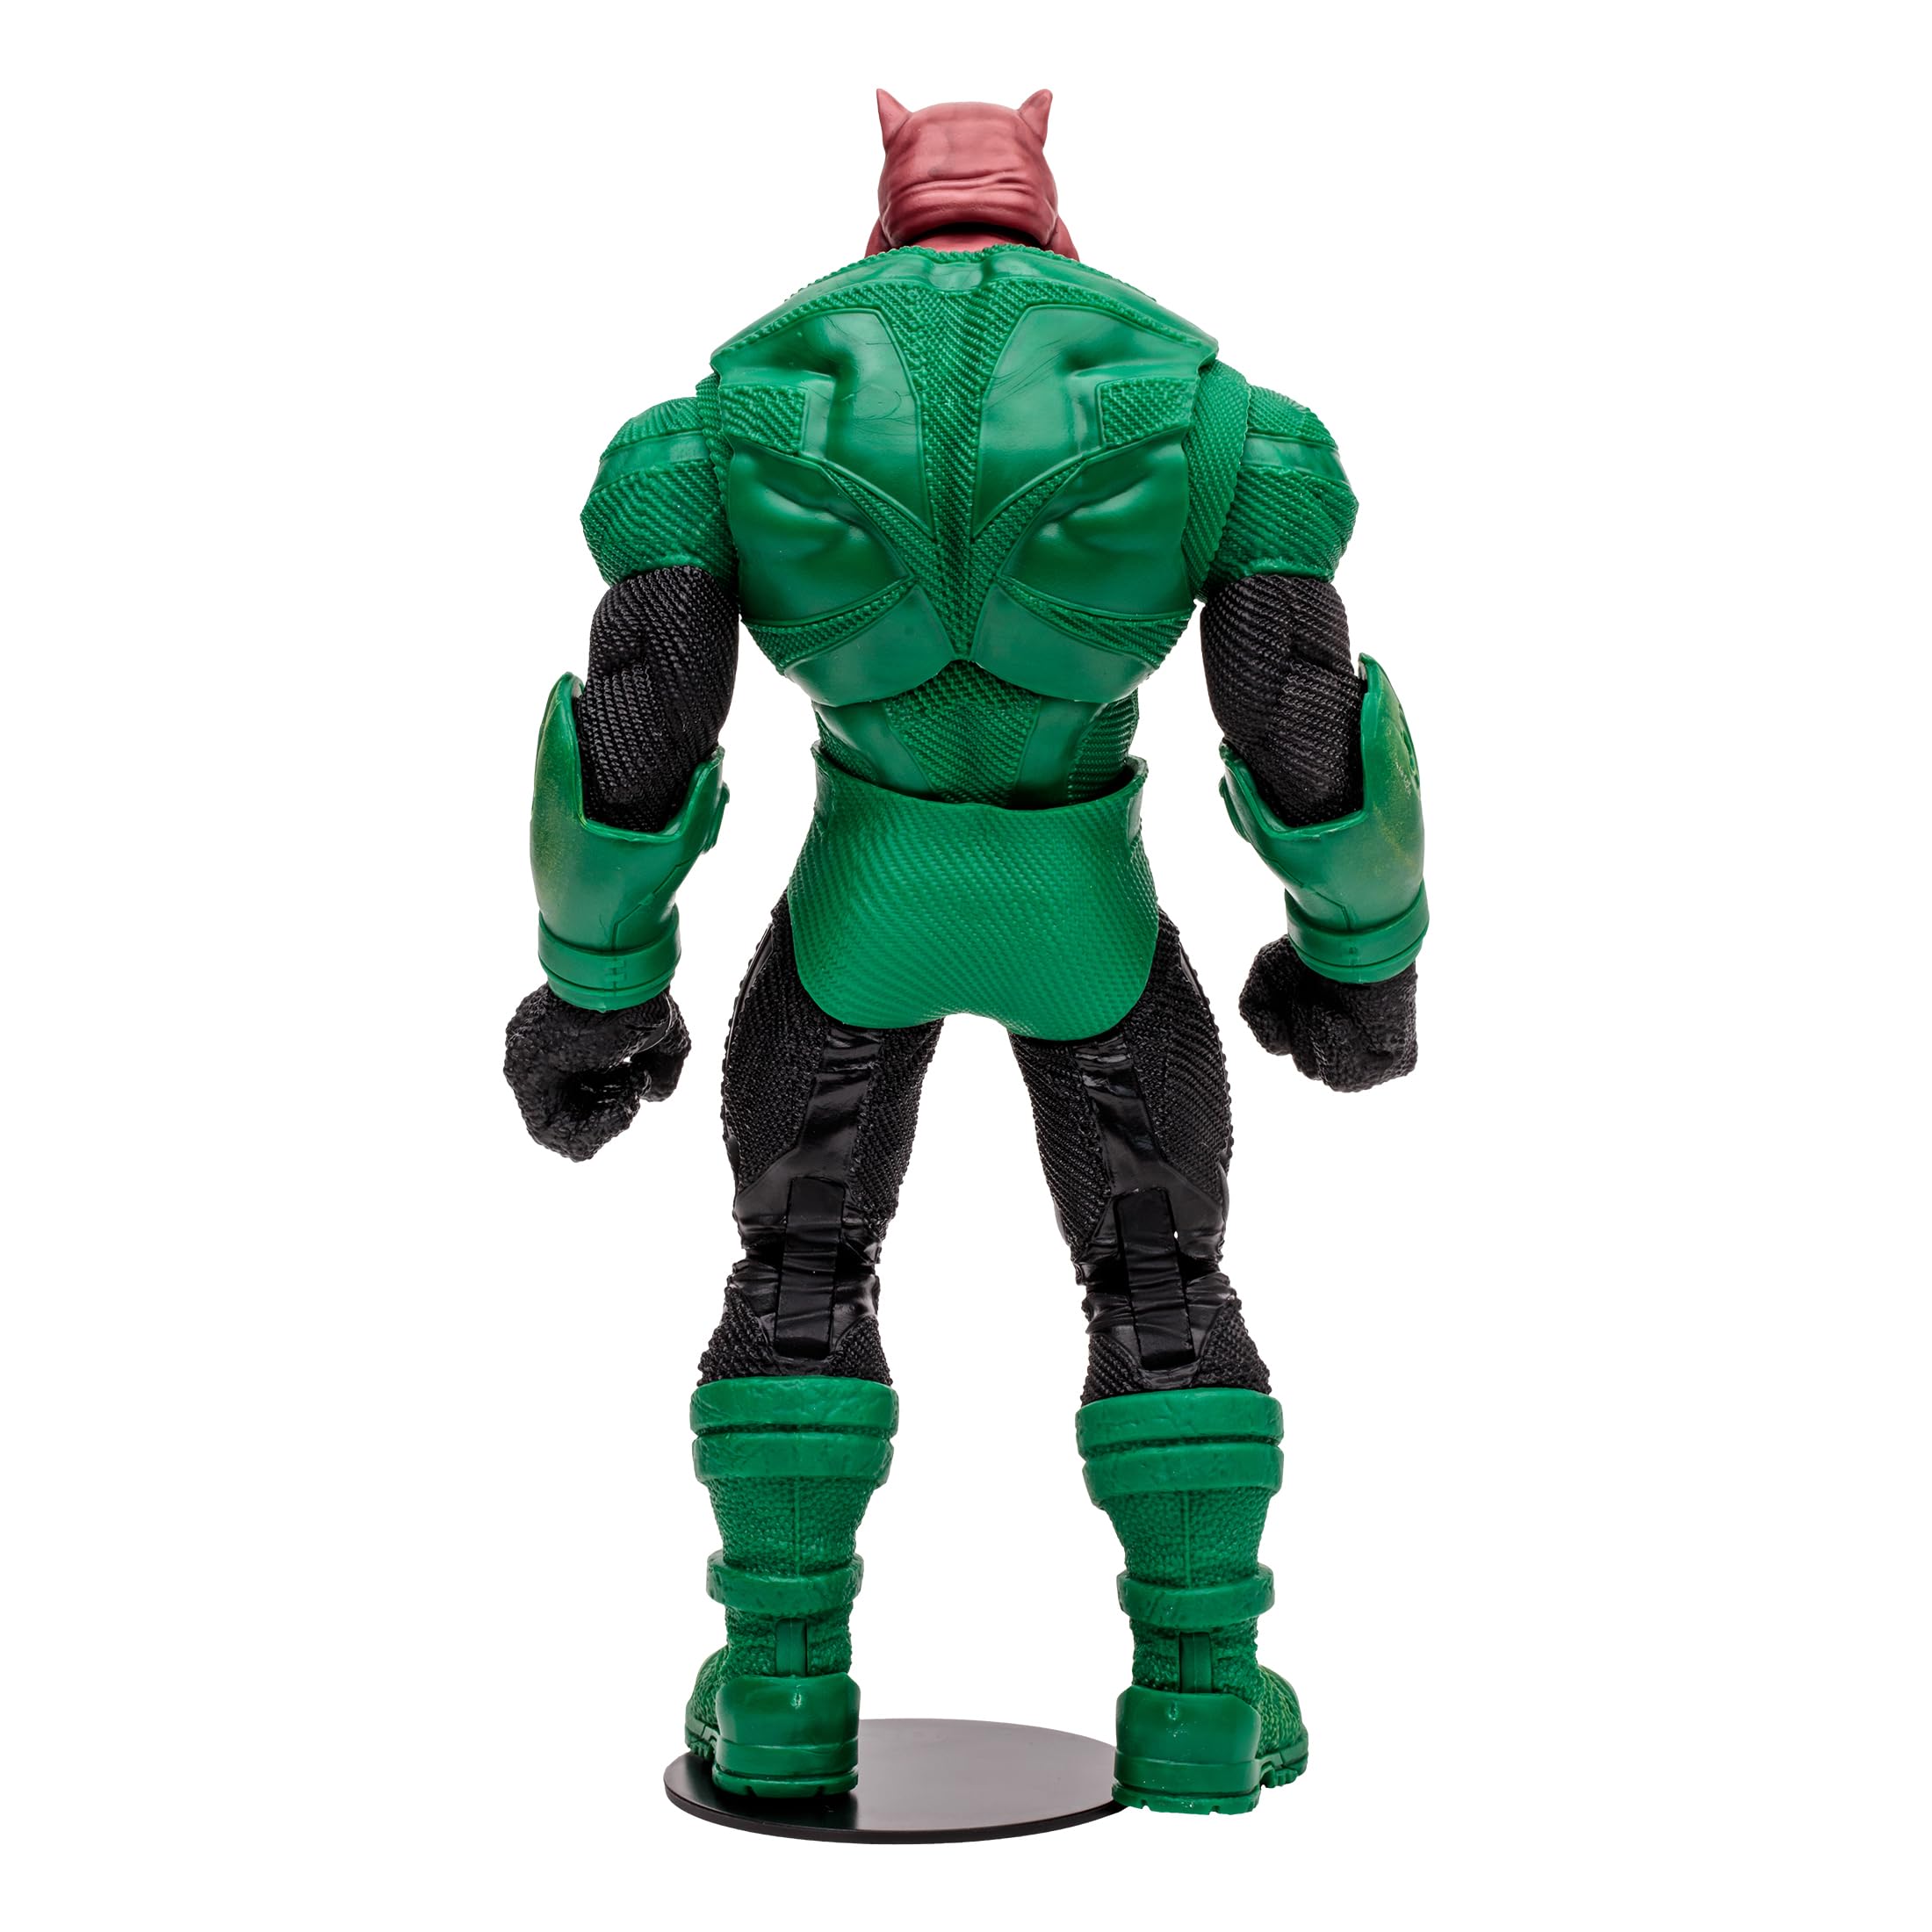 McFarlane Toys - DC Multiverse Kilowog & Green Lantern 2pk, Gold Label, Amazon Exclusive